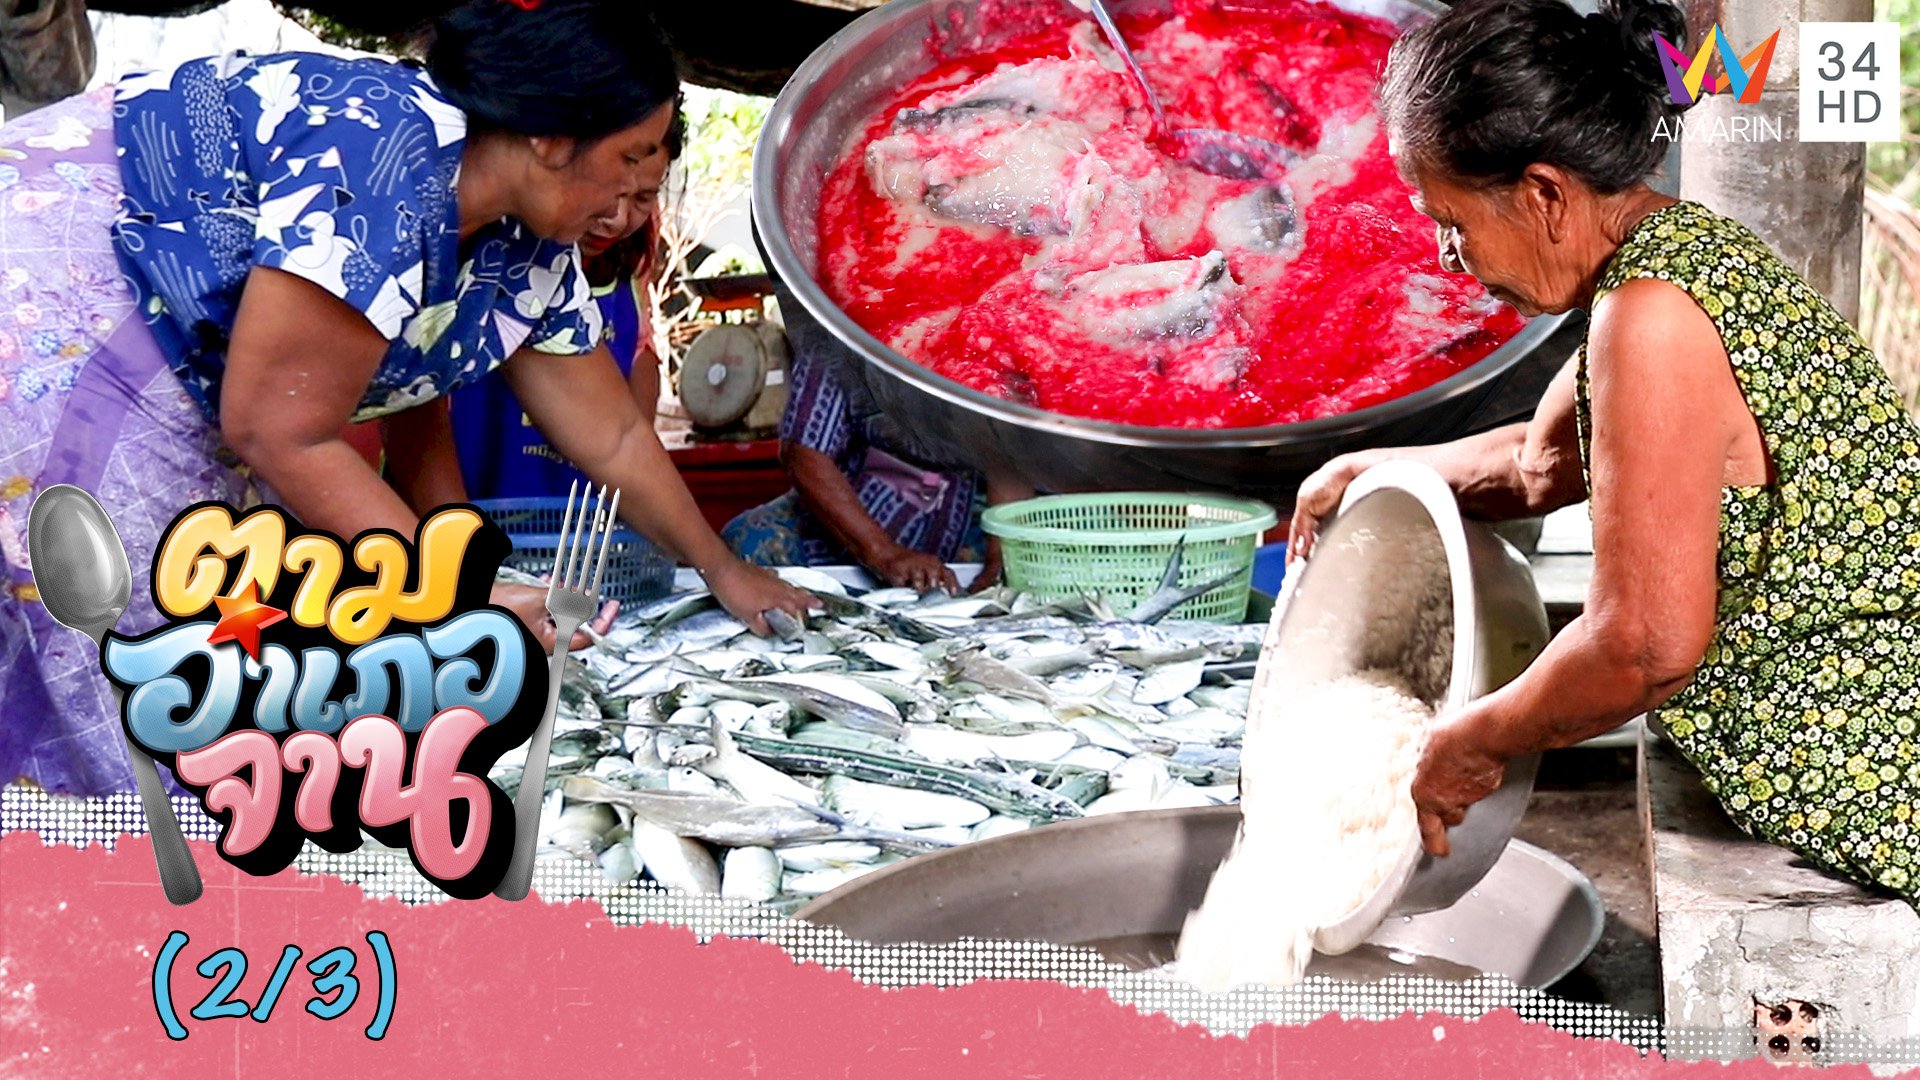 วิธีหมัก 'ปลาแป้งแดง' ทีเด็ดอาหารปักษ์ใต้ | ตามอำเภอจาน | 27 พ.ค. 66 (2/3) | AMARIN TVHD34